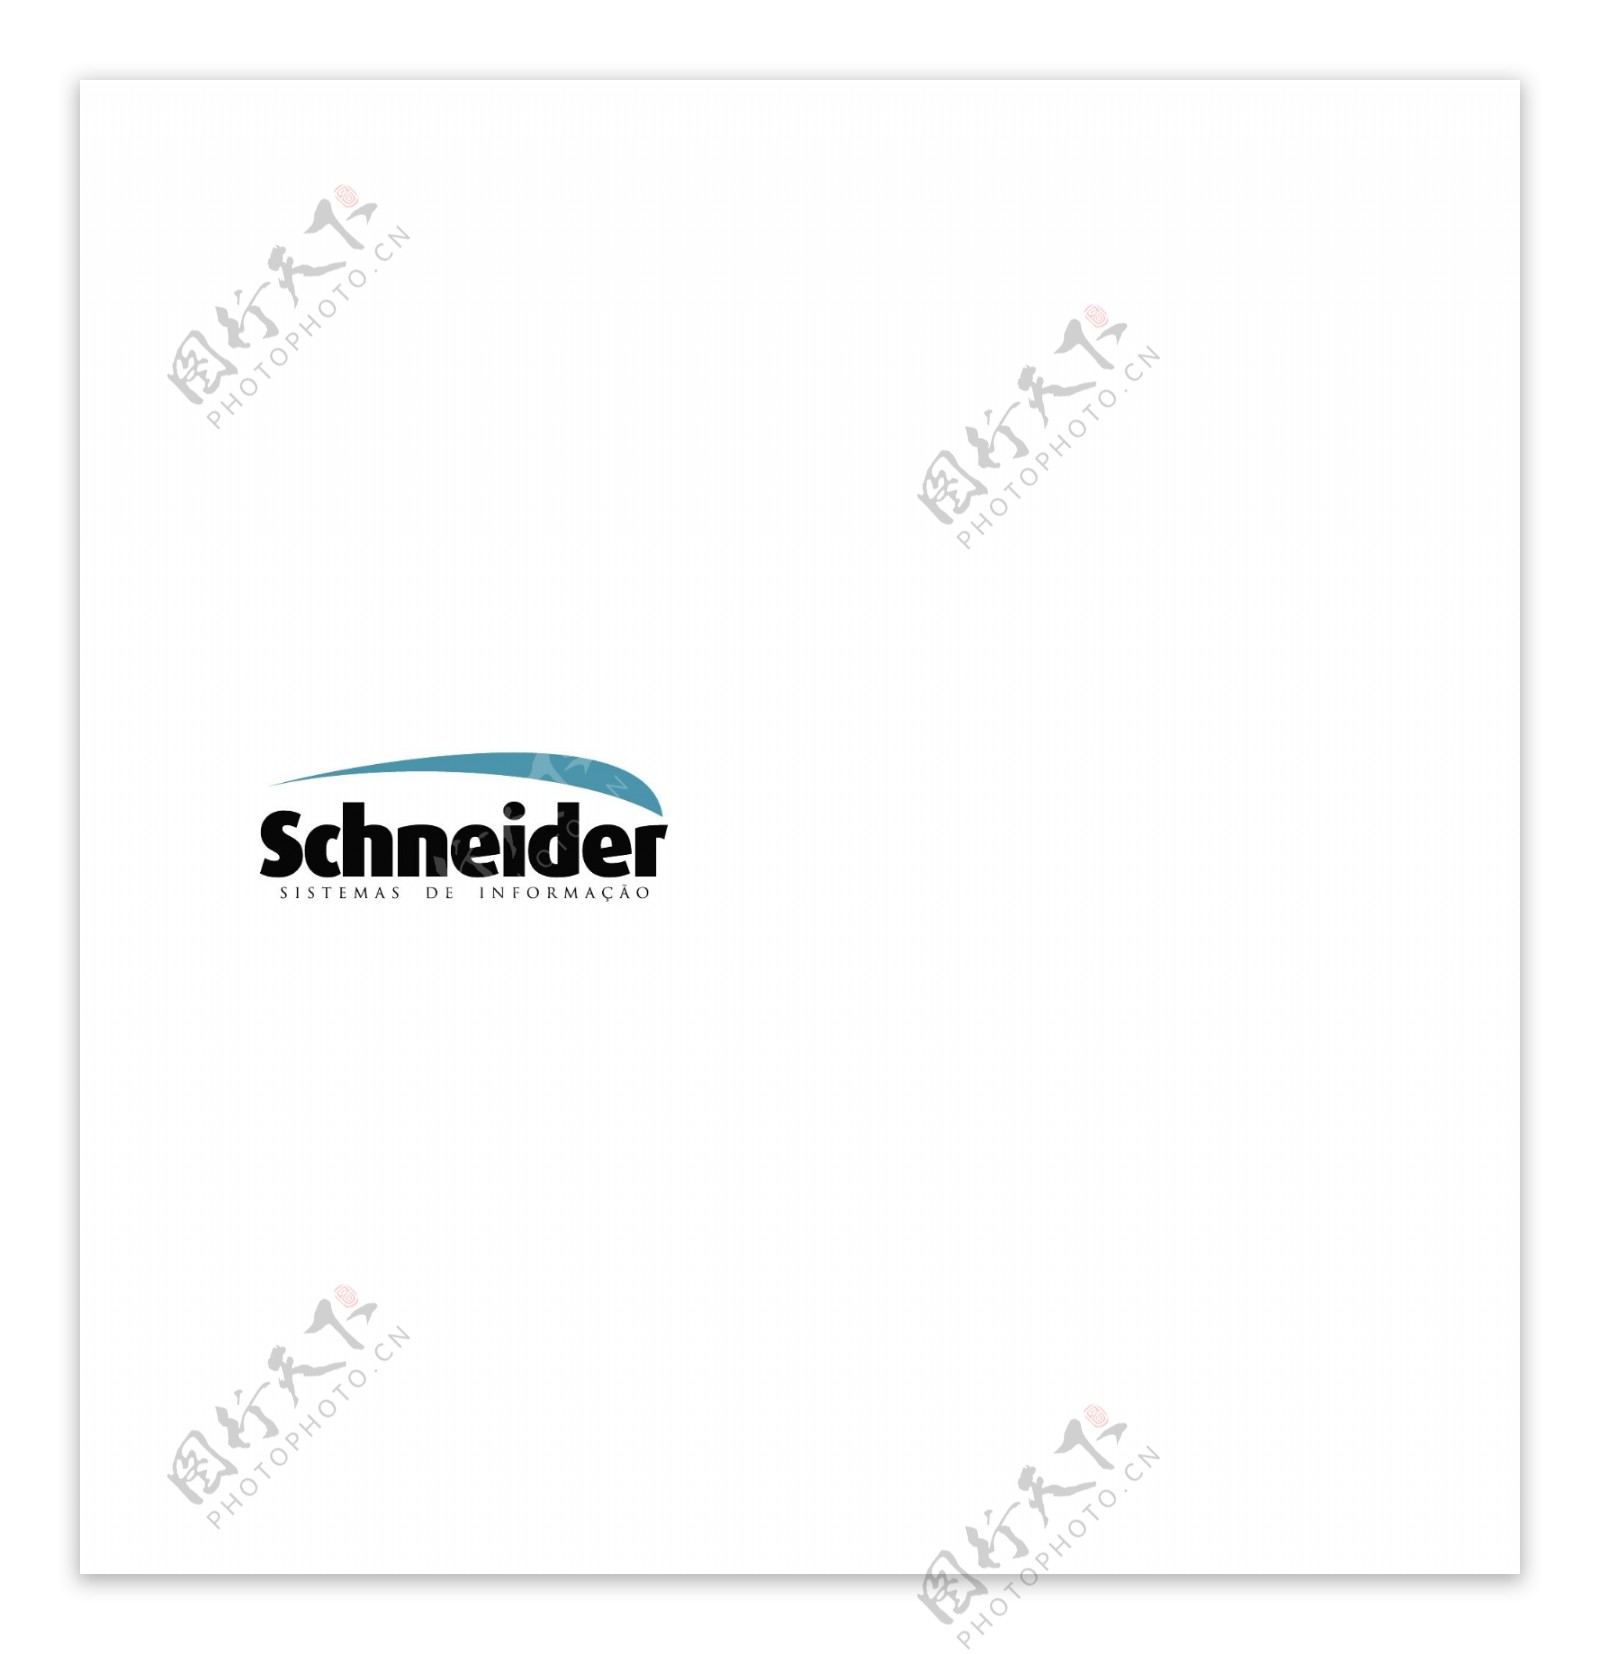 Schneidercorlogo设计欣赏Schneidercor网络公司标志下载标志设计欣赏